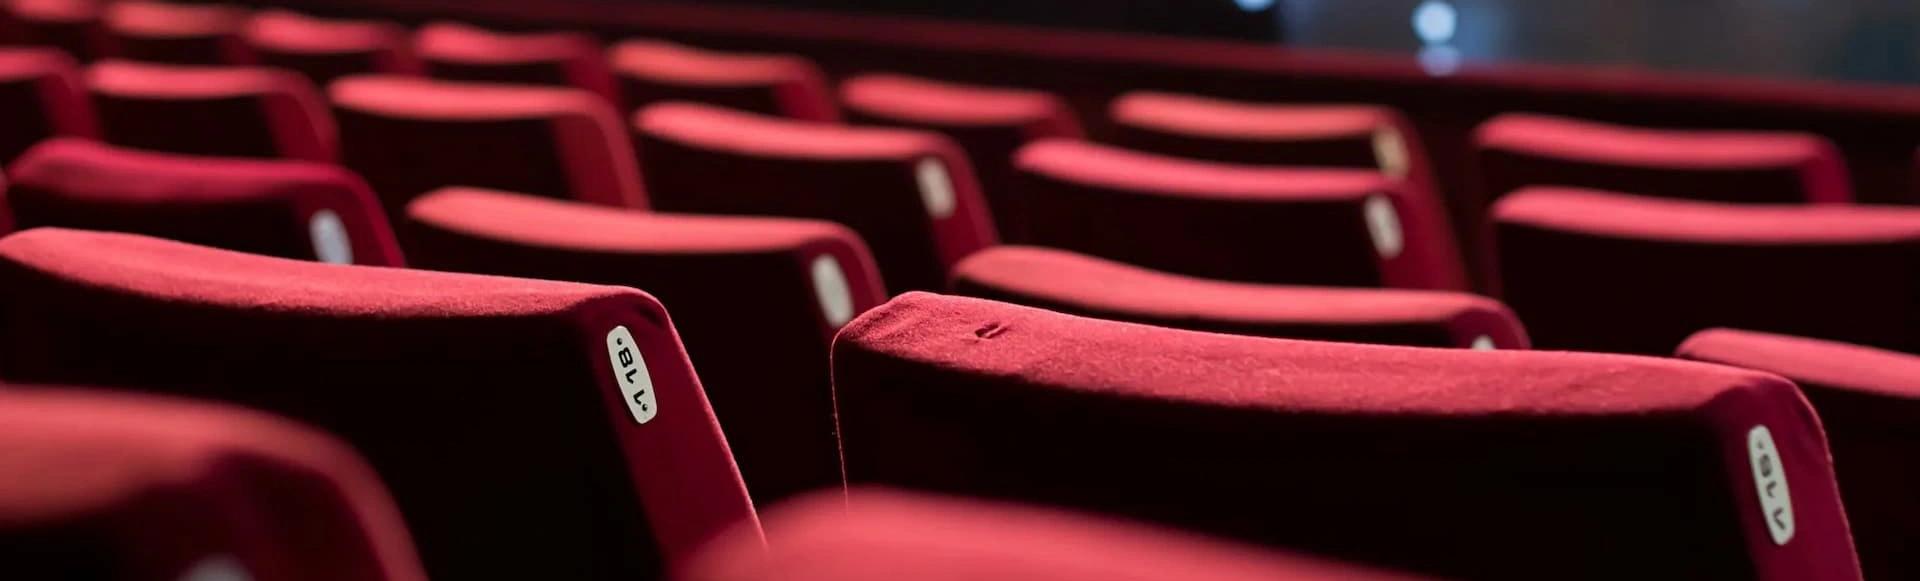 В театр Ленсовета можно приобрести билеты на спектакли с тифлокомментированием